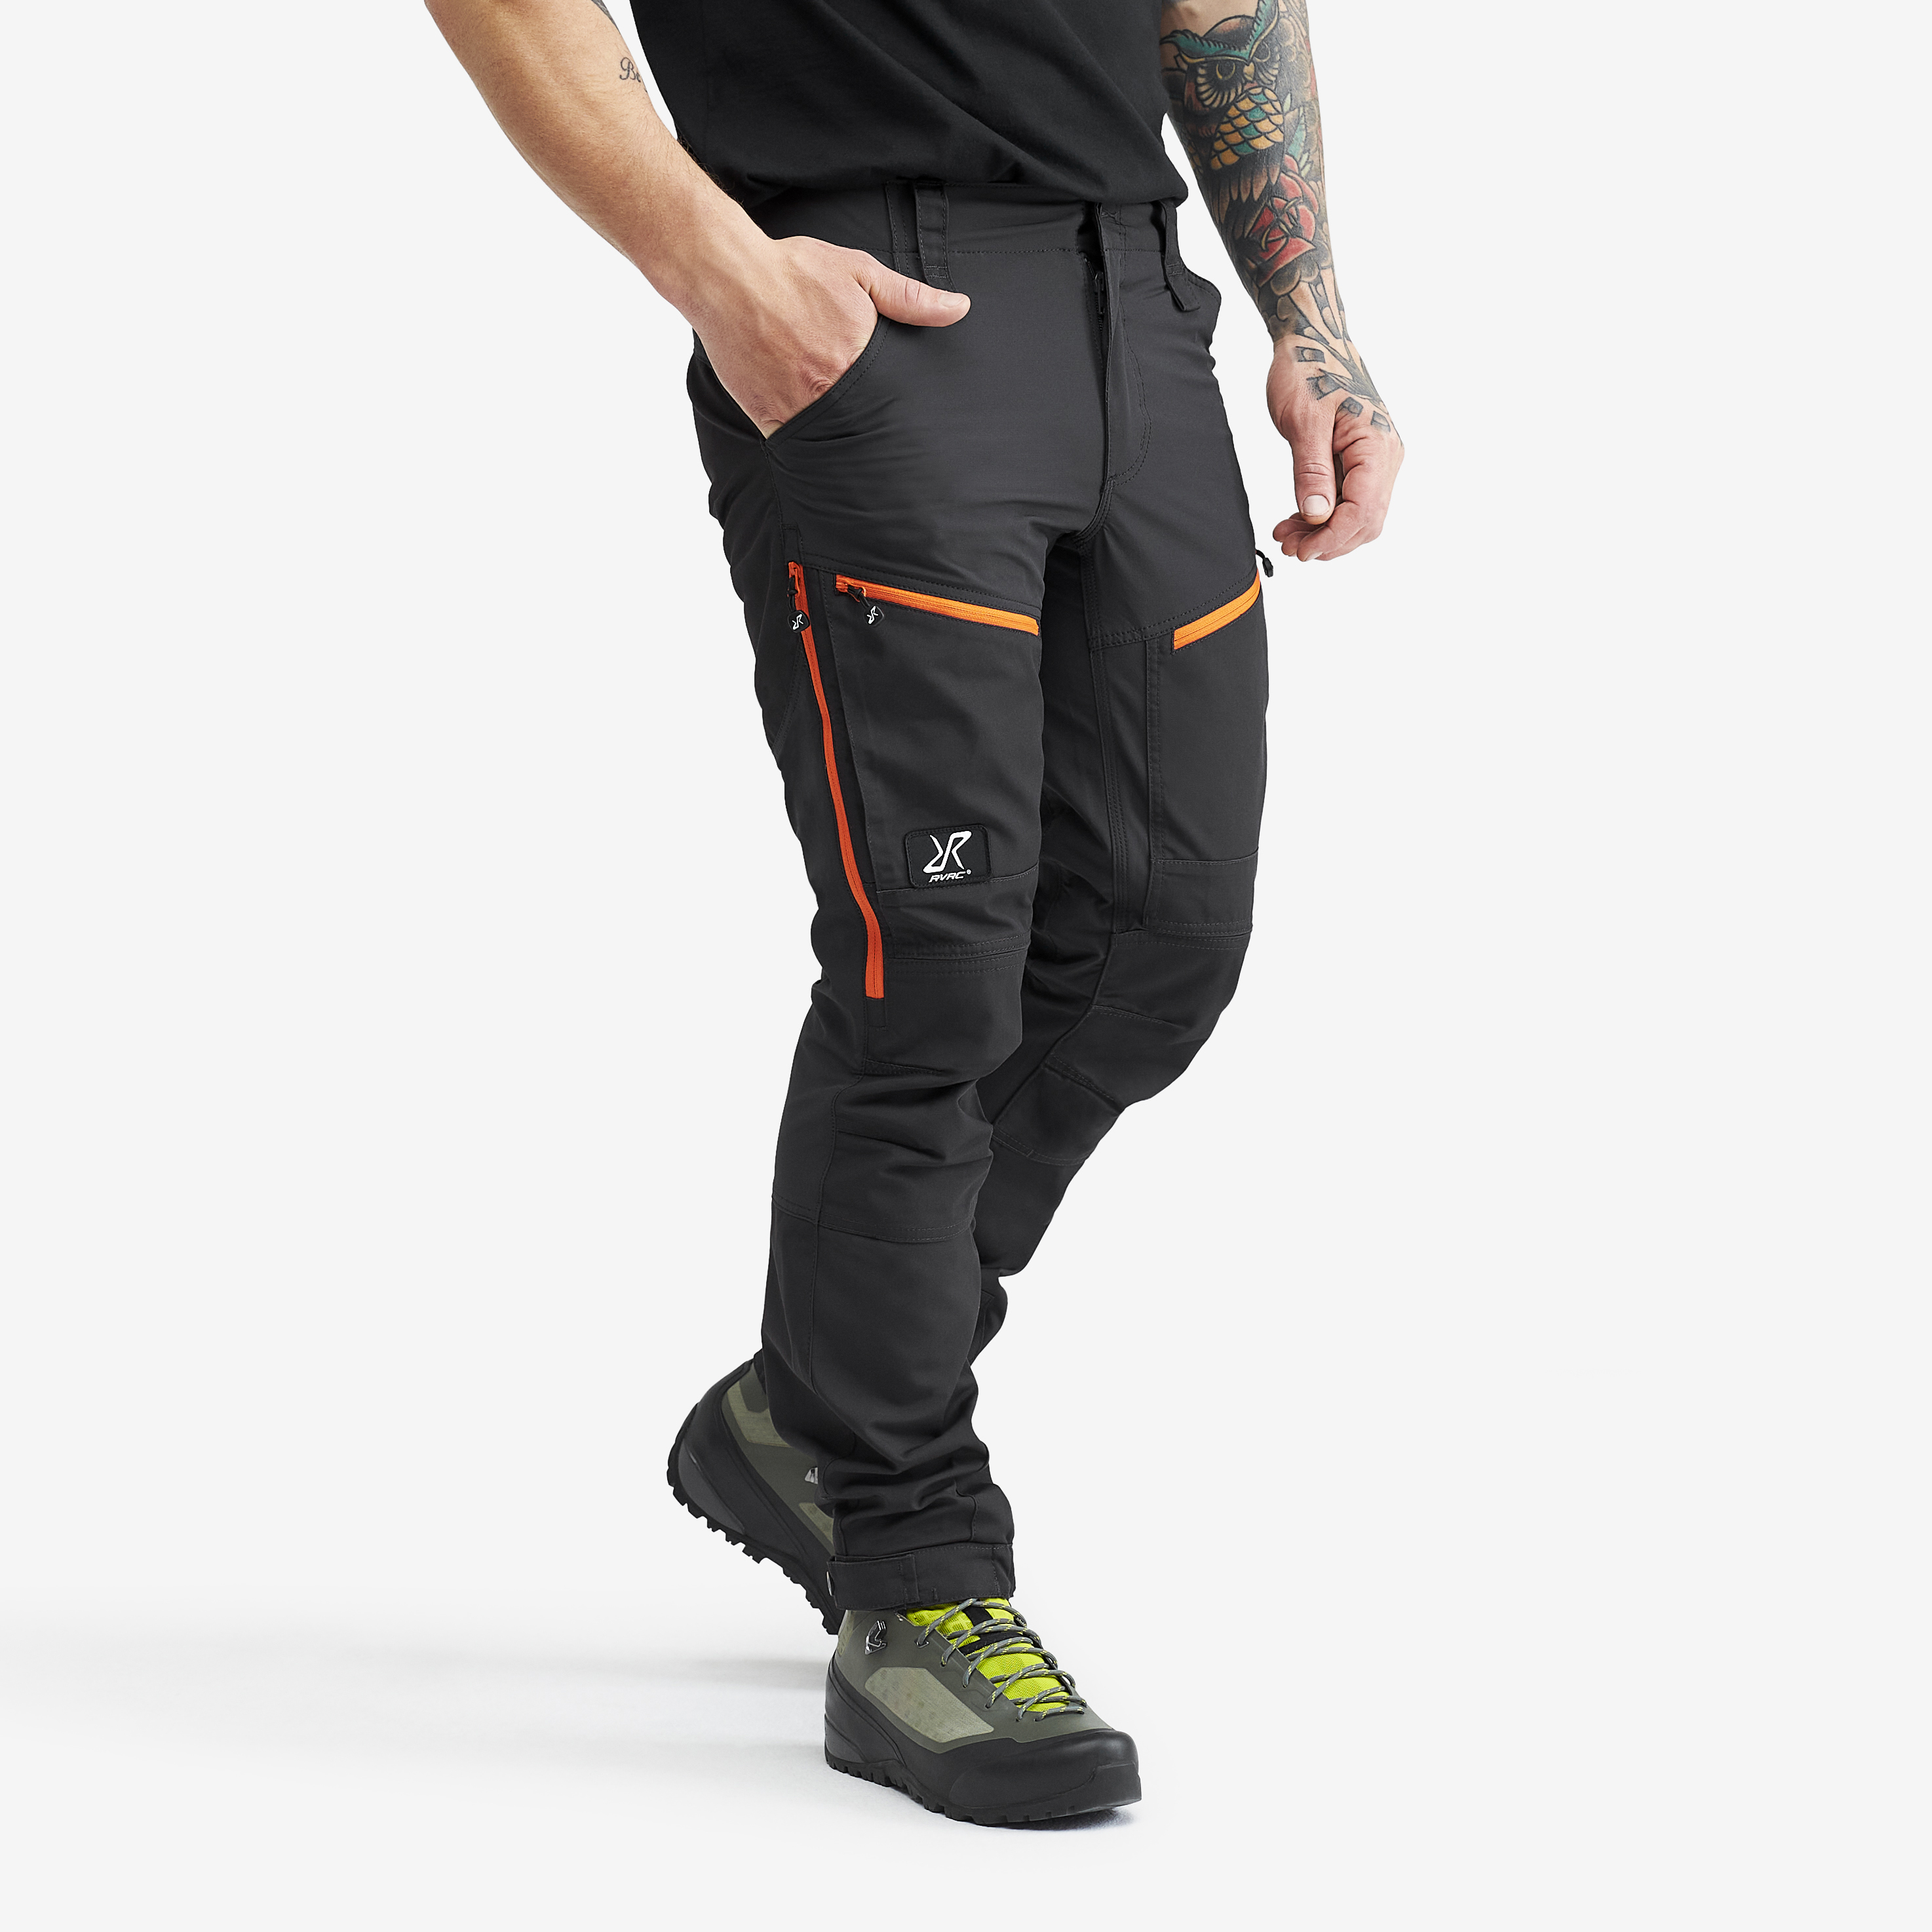 RVRC GP Pro Short turistické kalhoty pro muže v tmavě šedé barvě